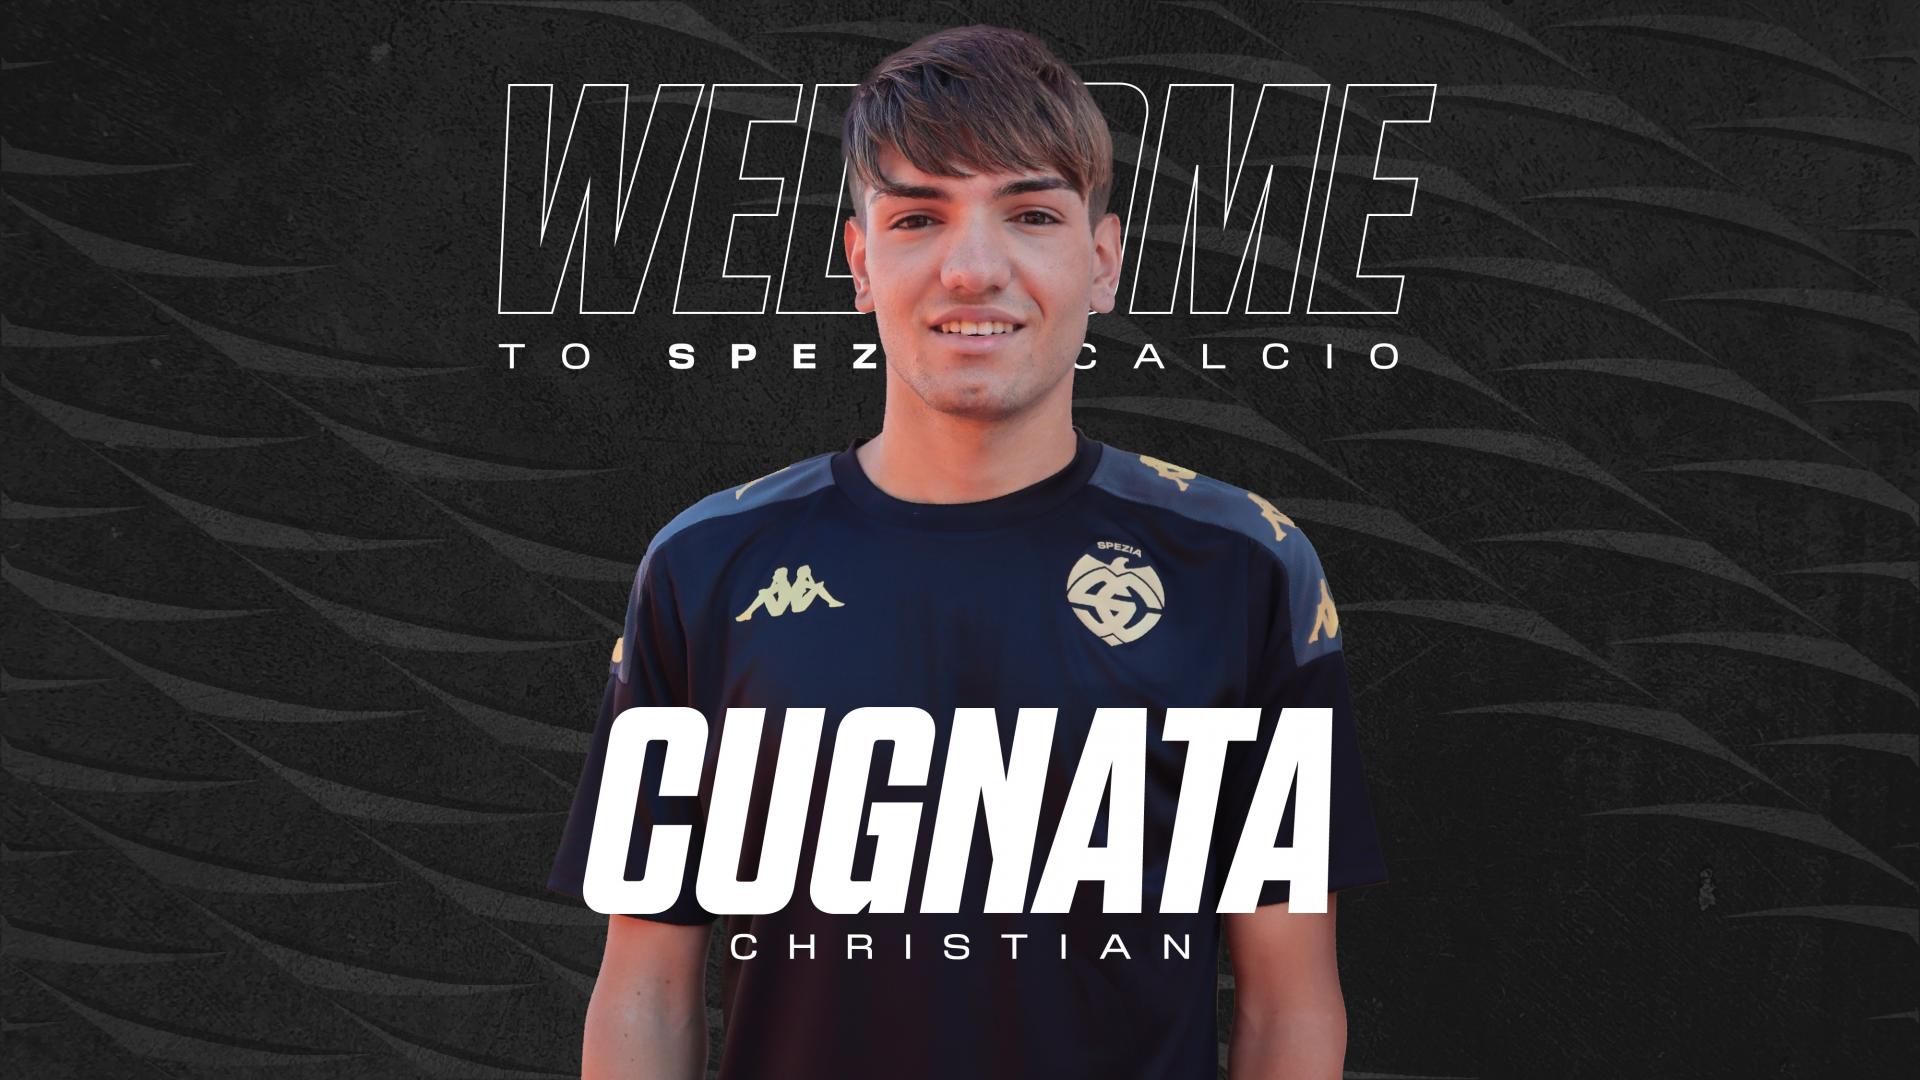 Ufficiale | Christian Cugnata è un nuovo calciatore dello Spezia